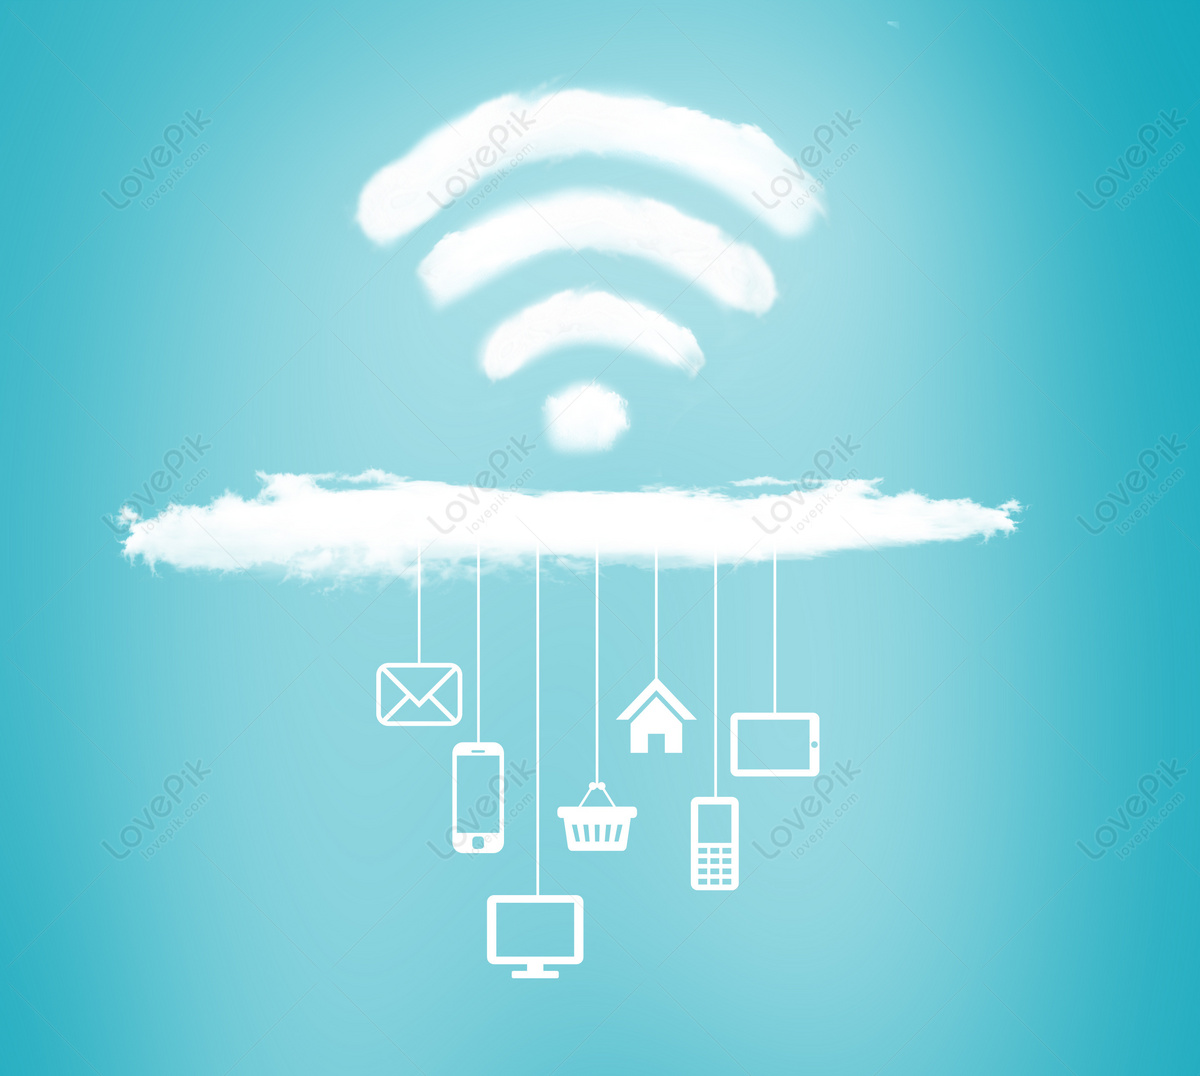 Tận dụng công nghệ wifi online để liên lạc với bạn bè và gia đình từ xa. Tìm hiểu cách cài đặt và sử dụng wifi để tối ưu hóa kết nối internet của mình. Đừng bỏ lỡ cơ hội để khám phá nhiều ứng dụng hữu ích và tiện lợi với công nghệ wifi online.